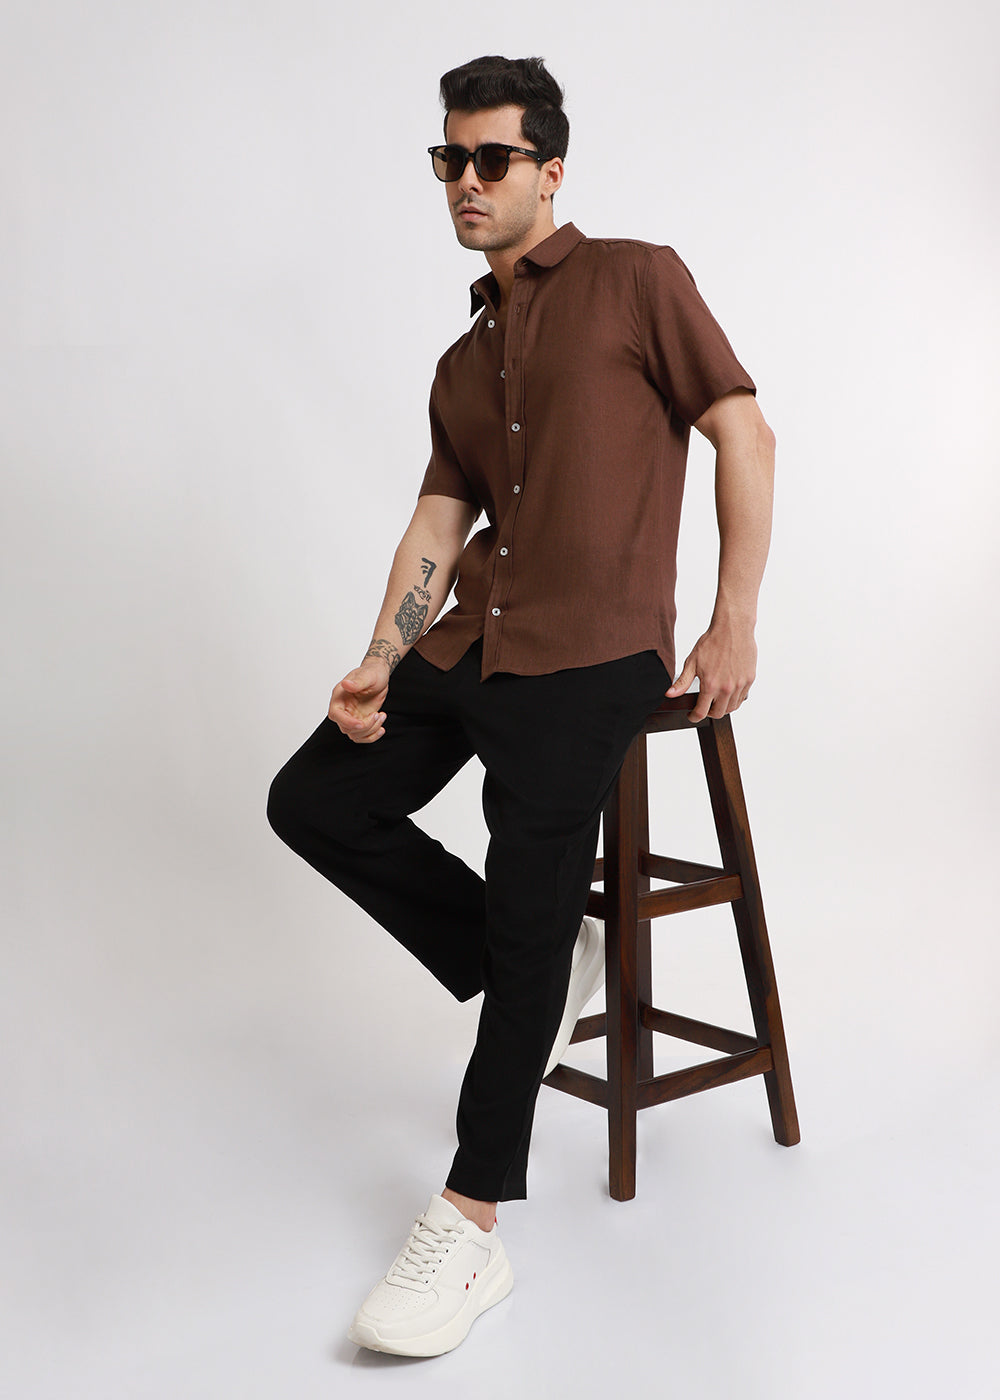 Batiste Brown Linen shirt